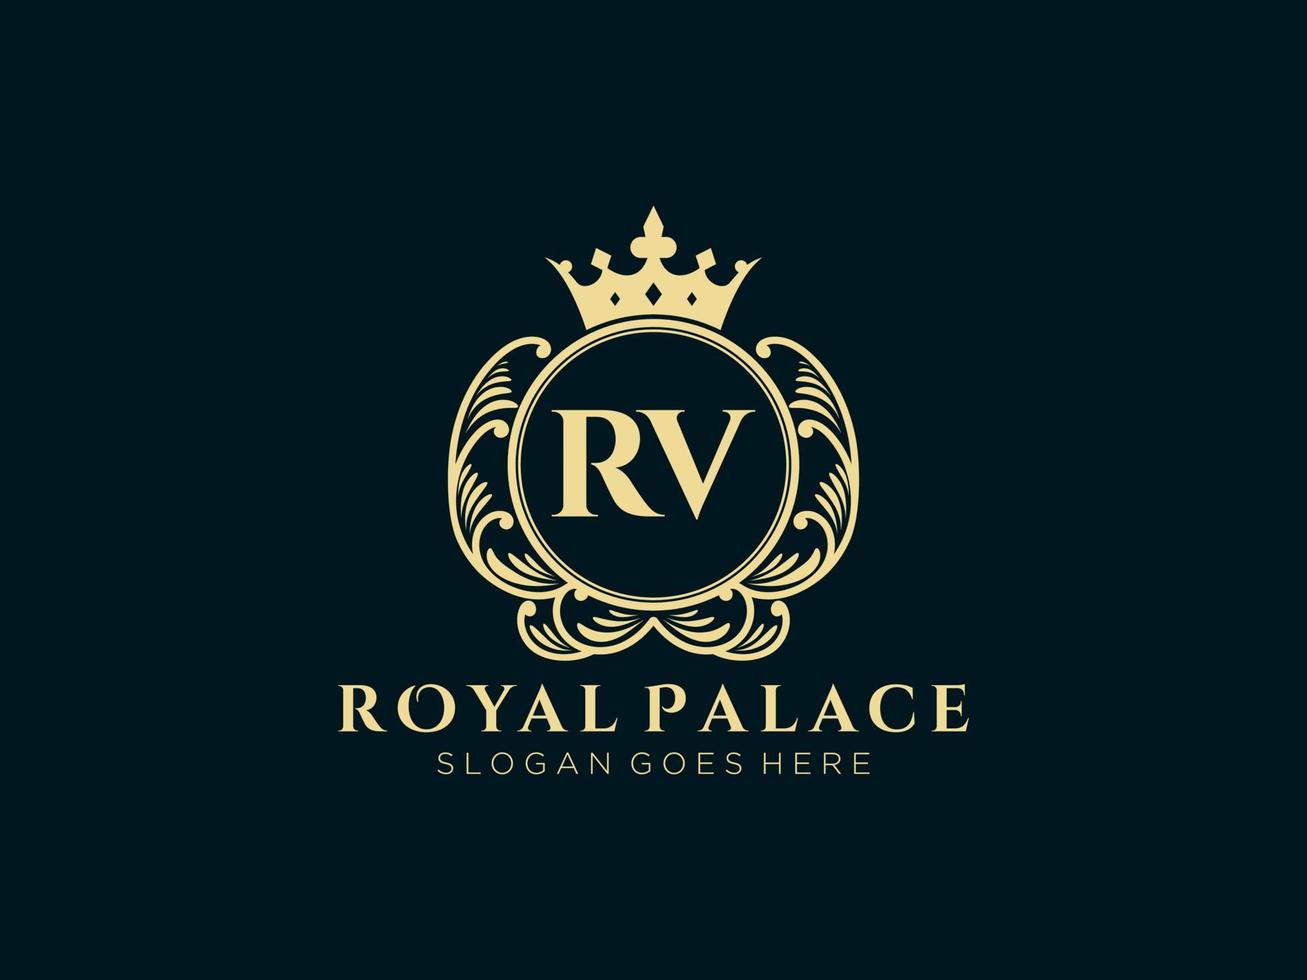 lettera rv antico reale lusso vittoriano logo con ornamentale telaio. vettore